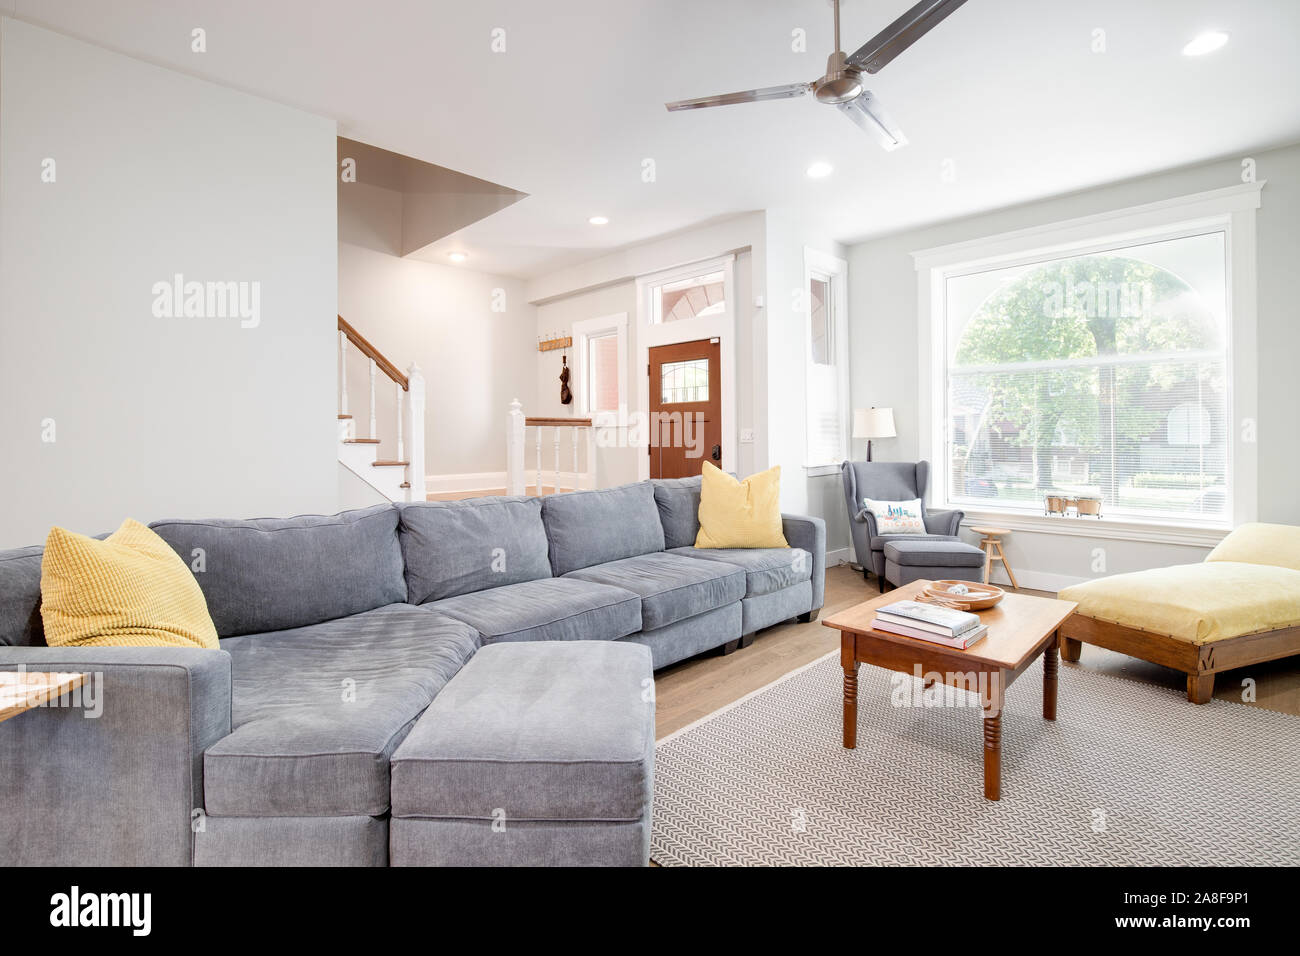 Ein luxuriöses Wohnzimmer in einem Viertel in der Innenstadt von Chicago. Das Zimmer verfügt über einen großen, grauen Couch mit gelben Akzent Kissen und eine Decke. Stockfoto